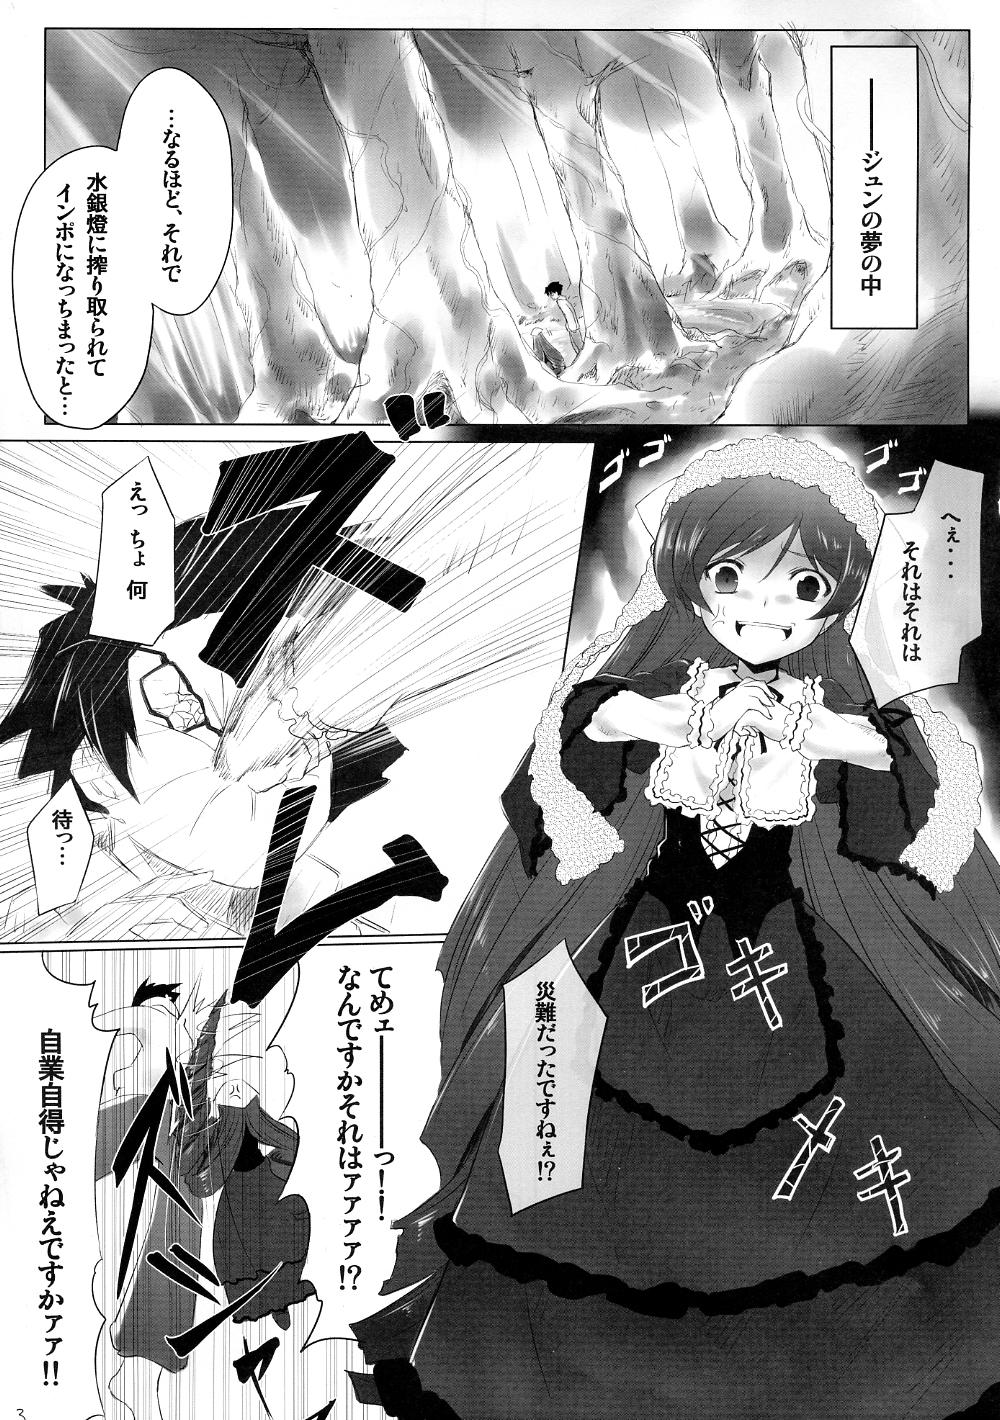 Putaria Sukoyaka ni!! - Rozen maiden Domination - Page 2